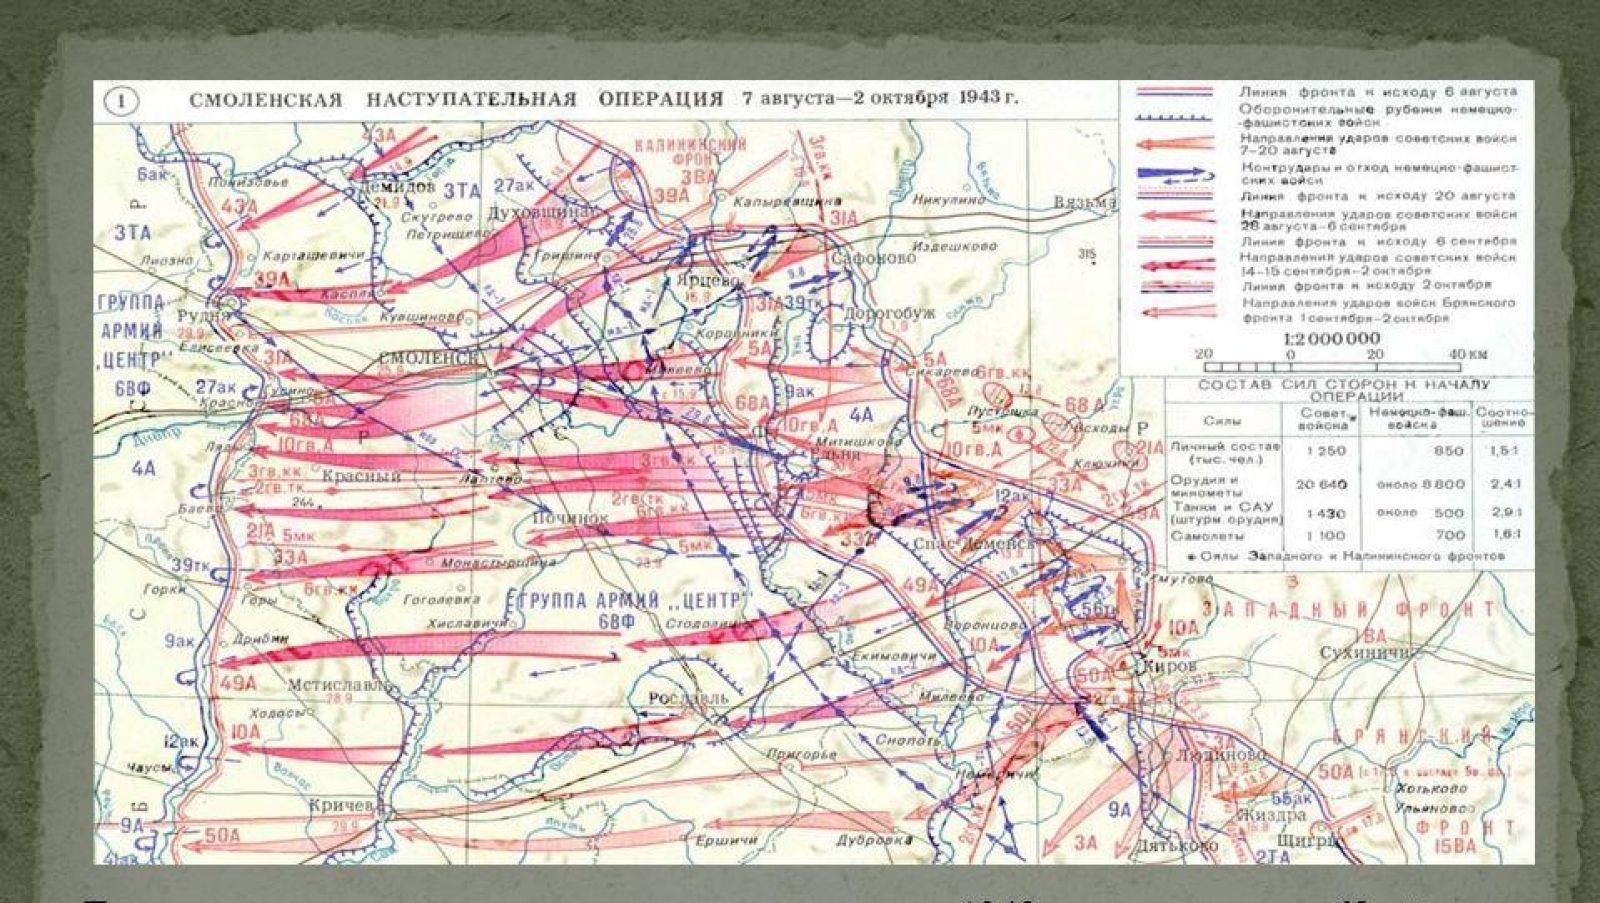 В каком году произошла стратегическая операция ркка. Смоленская наступательная операция 1943 карта. Смоленская операция 1943 г. Смоленская наступательная операция с 7 августа - 2 октября 1943 г.. Операция Суворов 1943 наступательная операция.